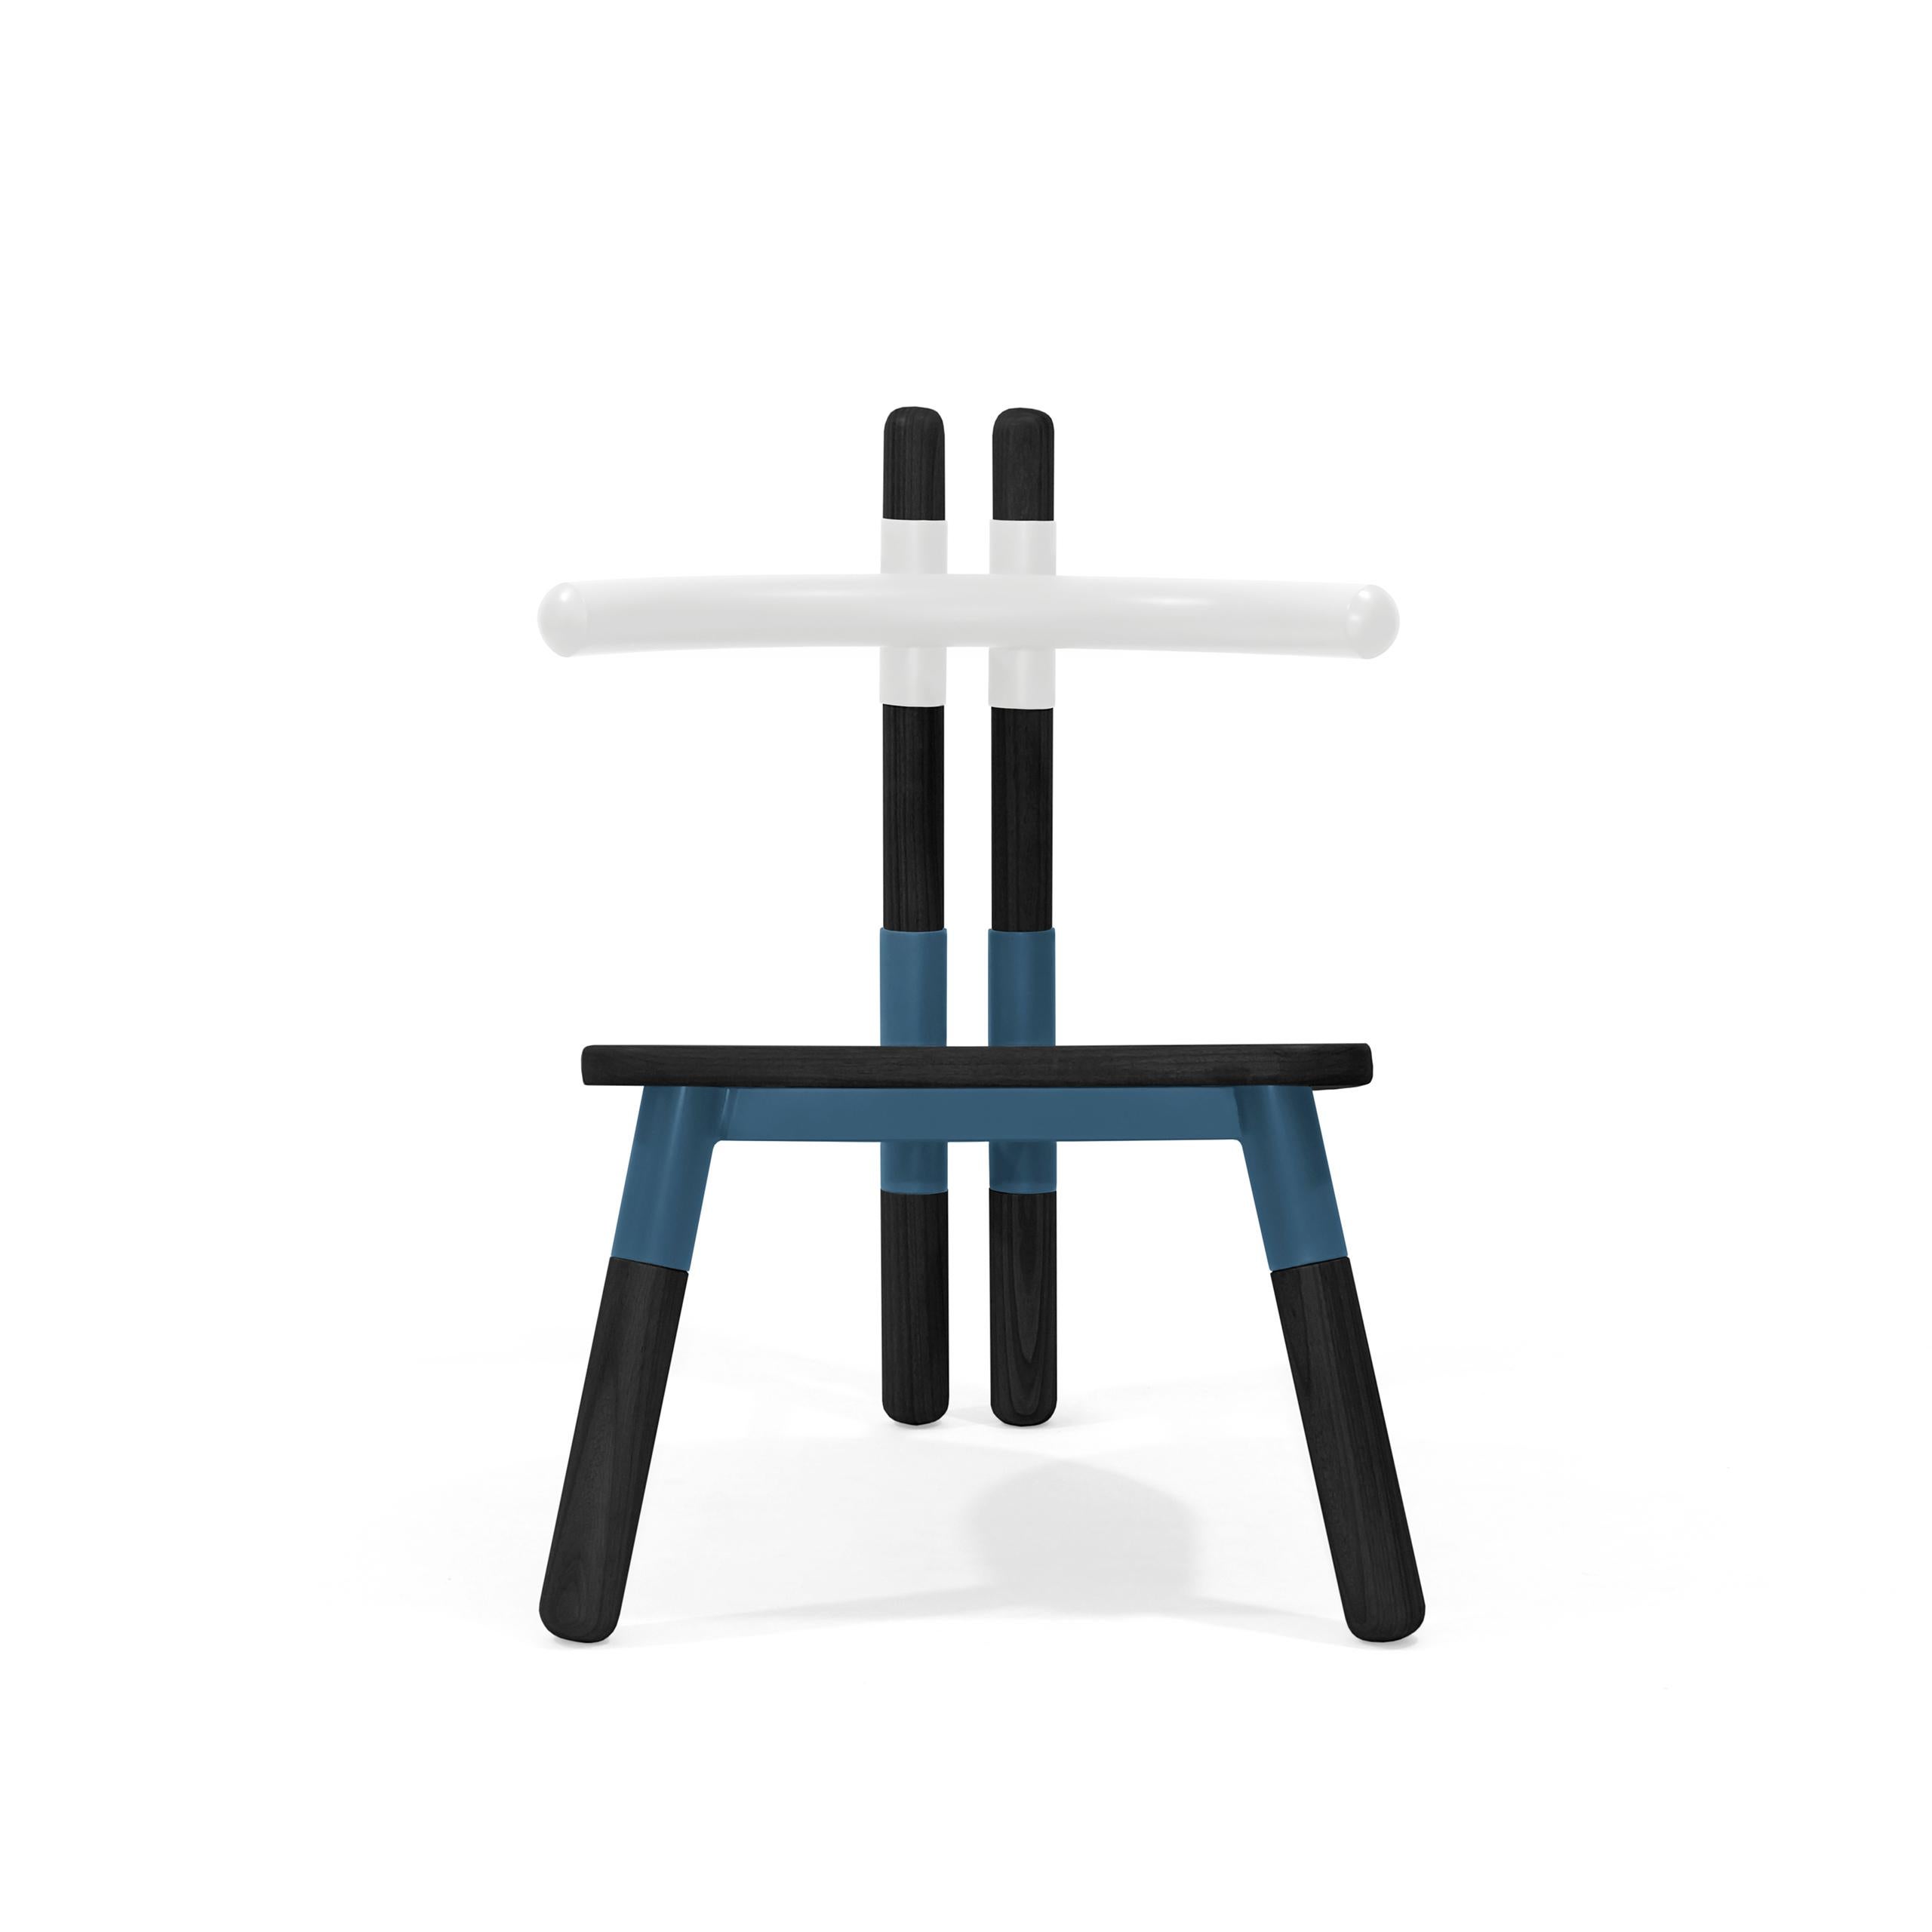 Der Sessel PK13 ist von den Holzbindern inspiriert, die bei der Konstruktion von Dächern verwendet werden.
Die Stuhlmuffen beziehen sich auf das 